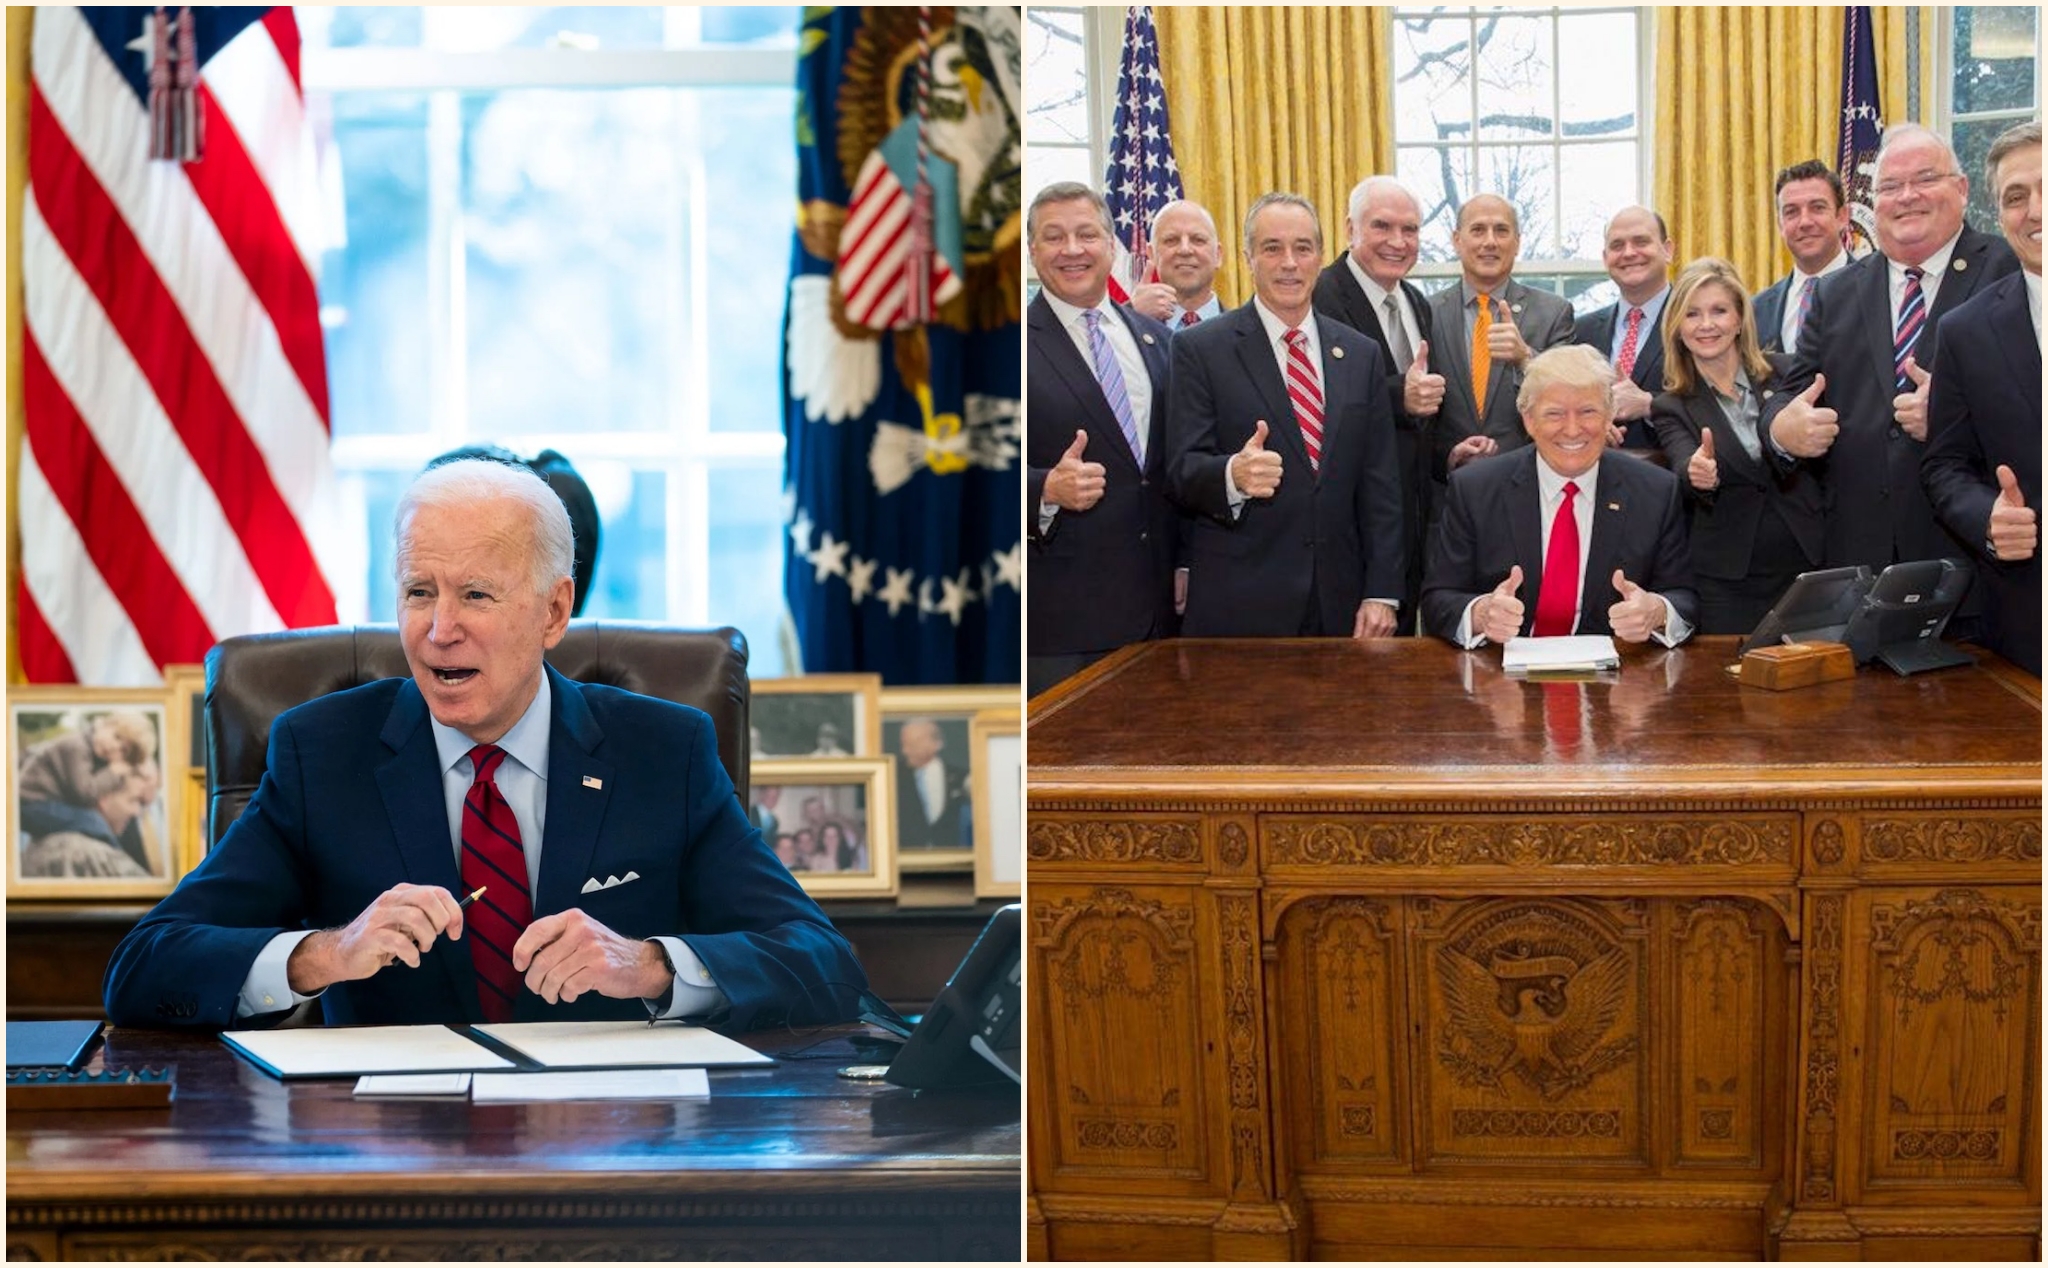 Chiếc bàn làm việc của các đời Tổng thống Mỹ có gì đặc biệt